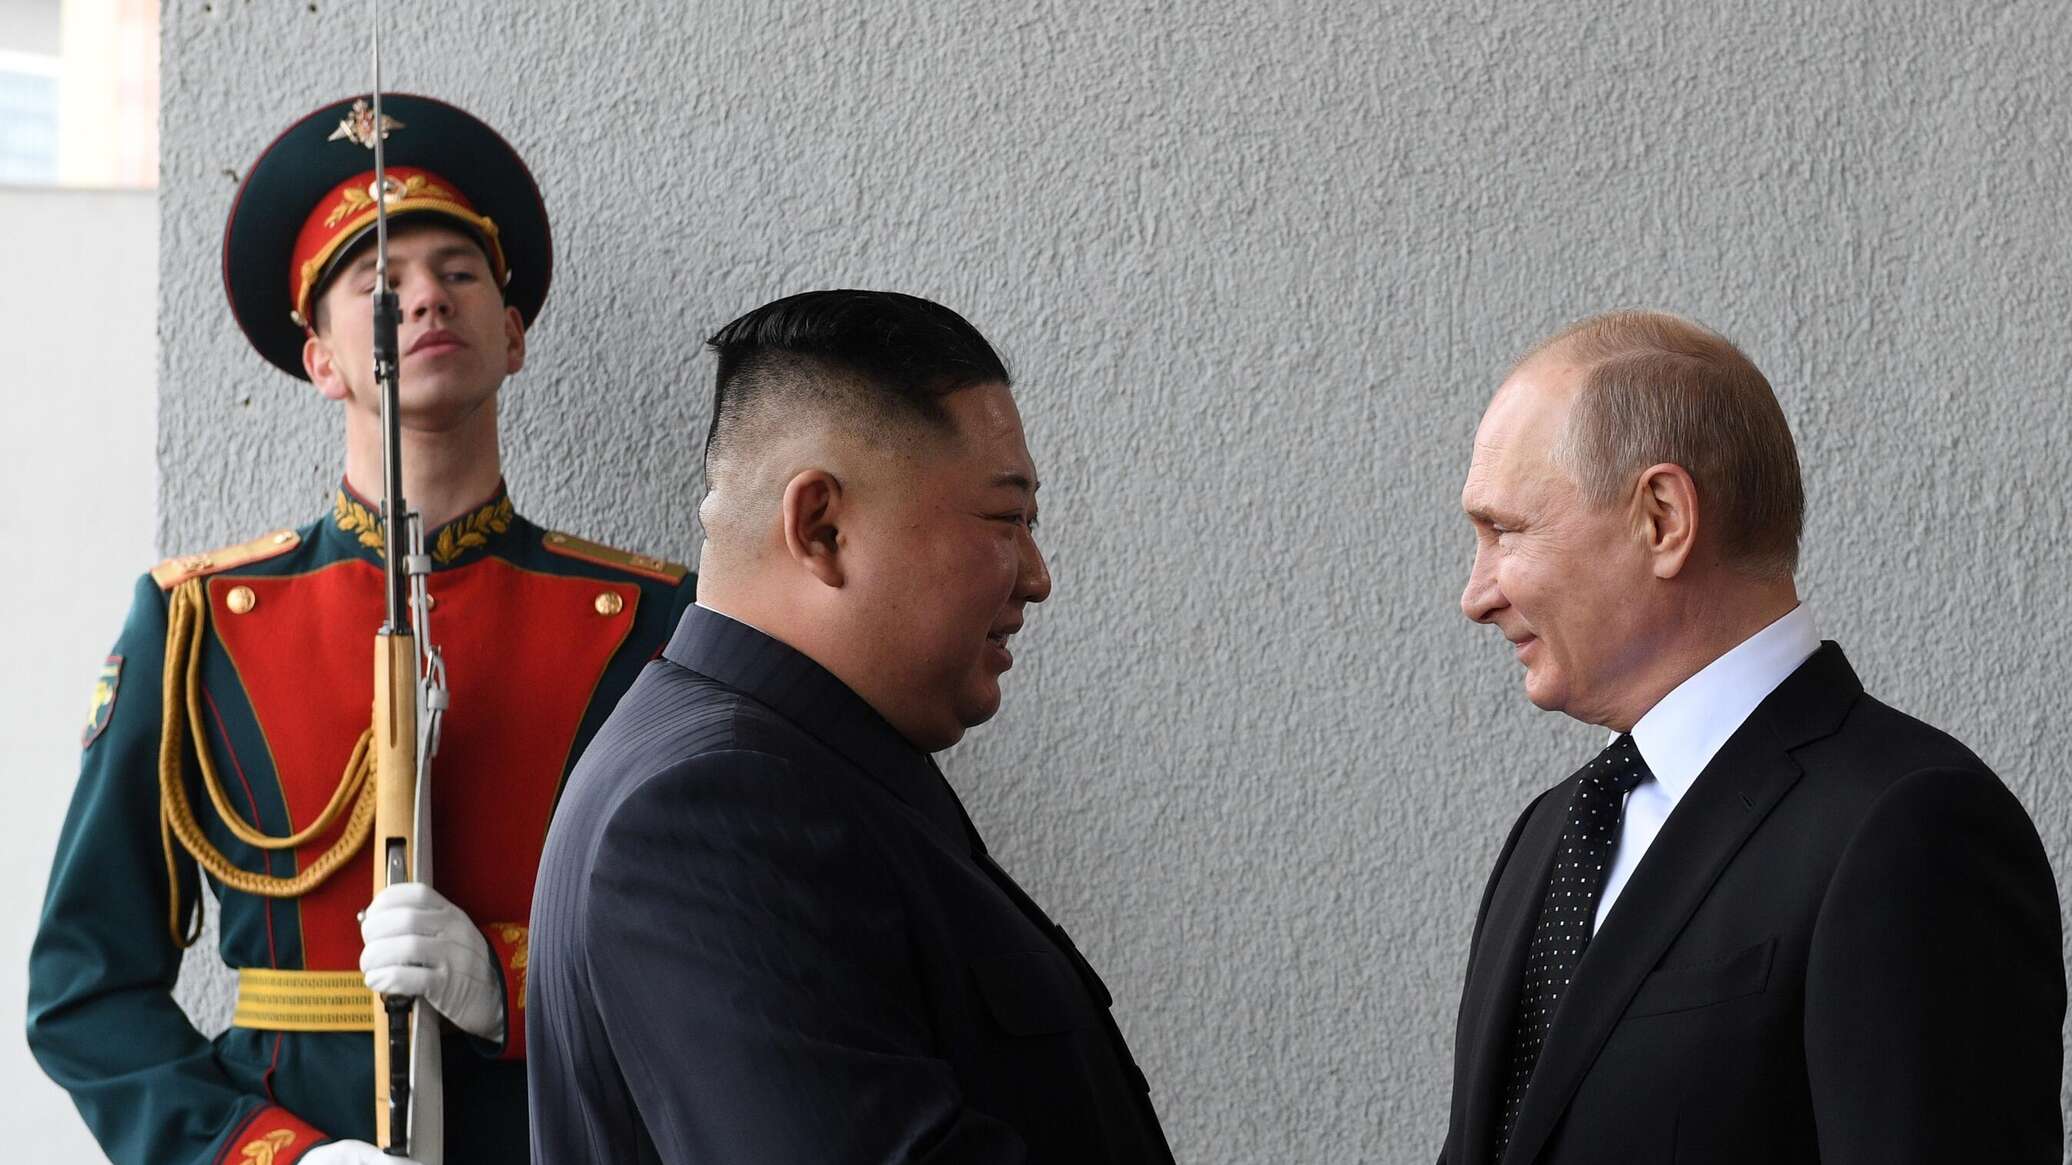 كيم جونغ أون مهنئا بوتين: سيحقق الشعب الروسي بتوجيهاتكم النصر في بلوغ السلام والعدالة الدوليين